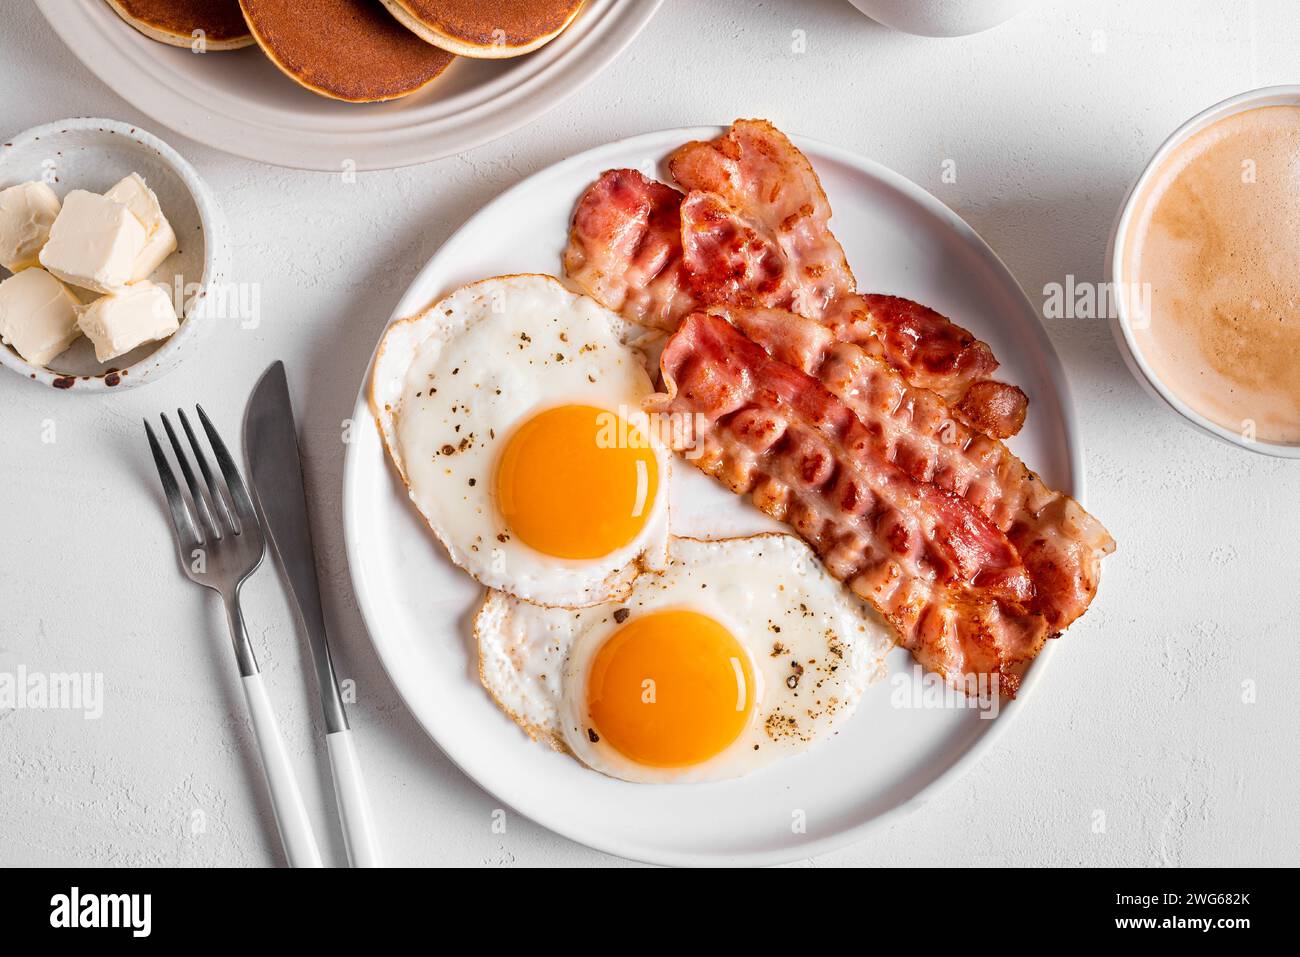 Desayuno con huevos fritos, tocino, tortitas y café, vista superior. Huevos fritos soleados con tocino en el plato y café cappuccino de la mañana. Bre americano Foto de stock